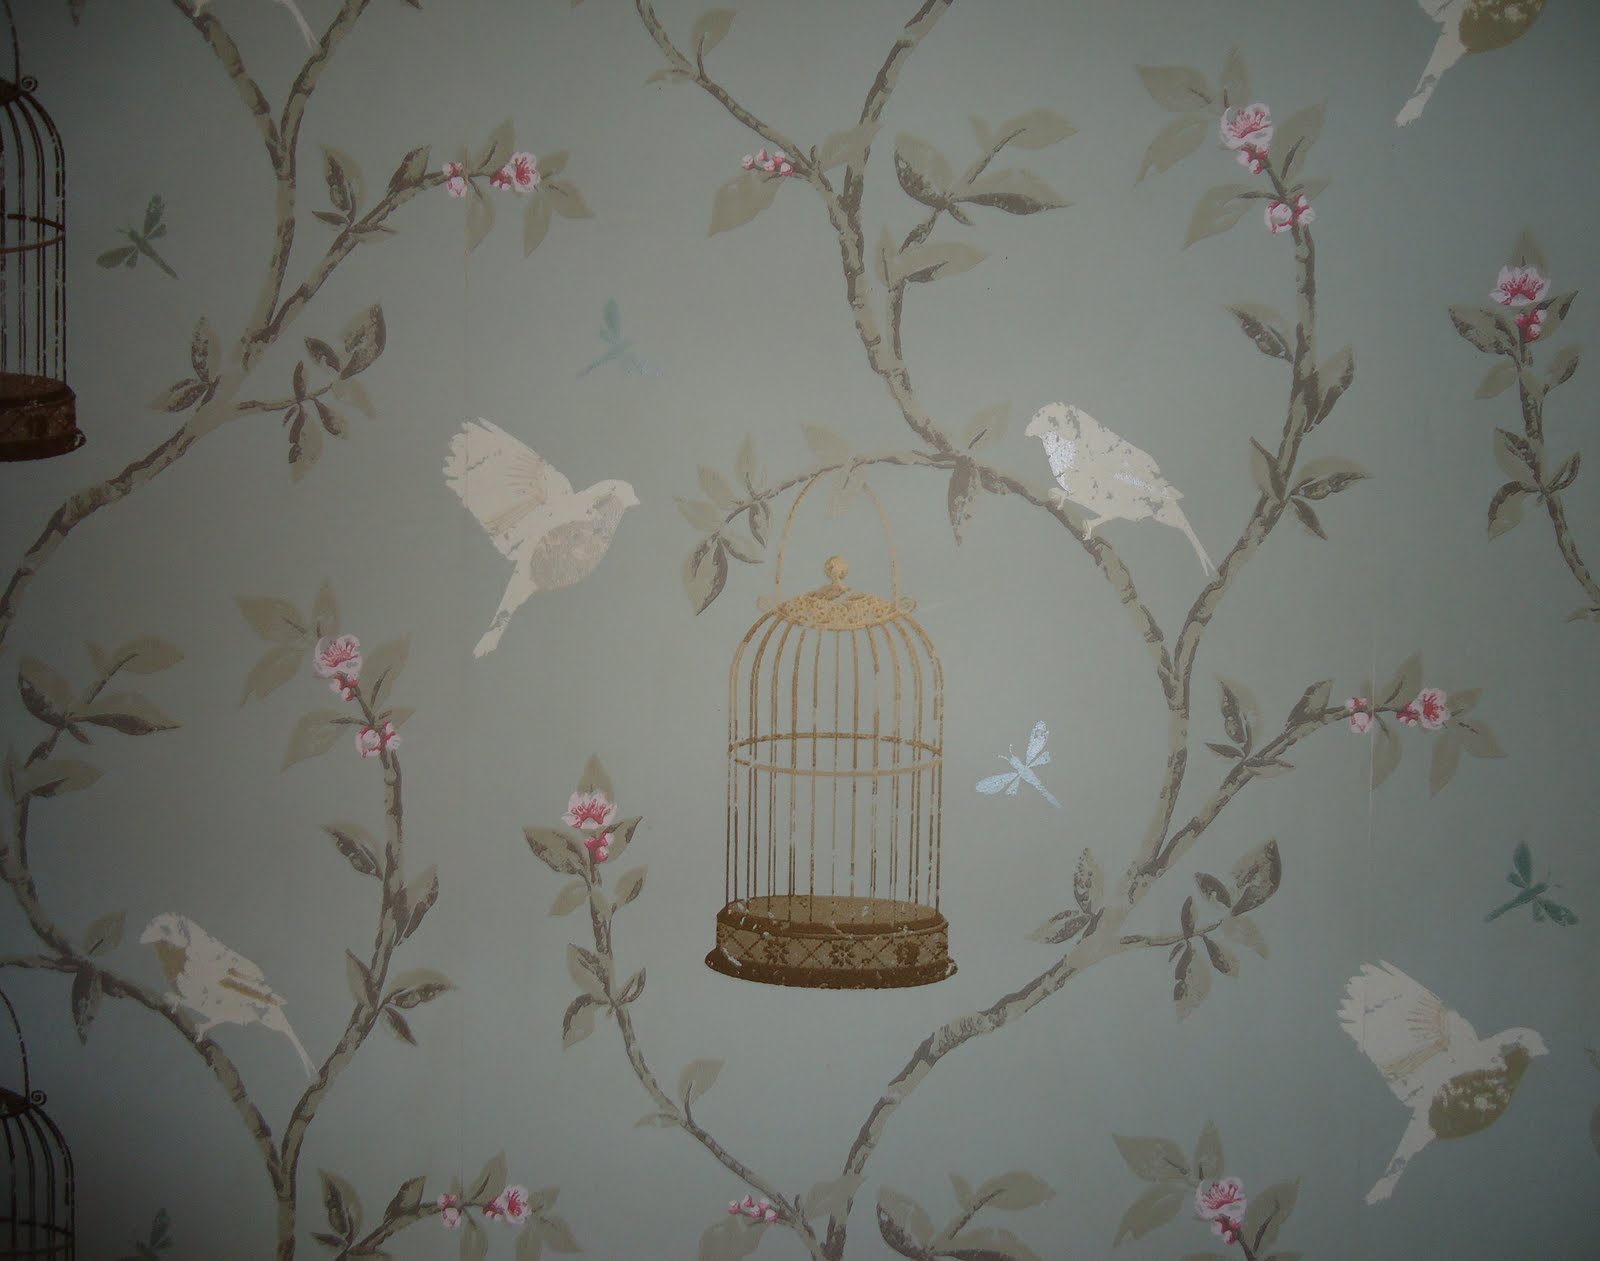 Vintage Bird Cage Background